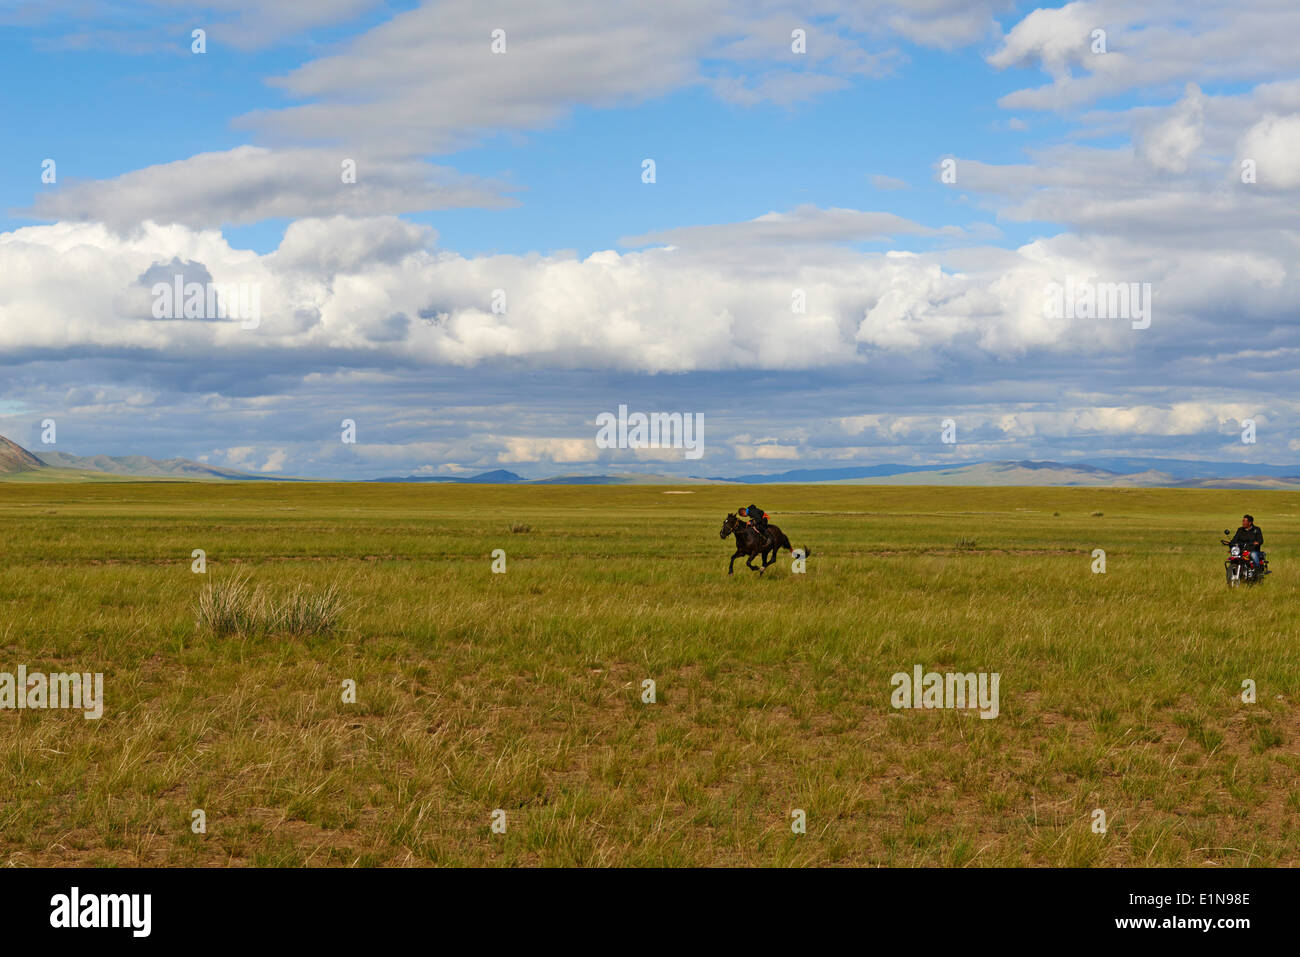 Mongolia, Tov provincia, formazione per Naadam cavallo di razza Foto Stock